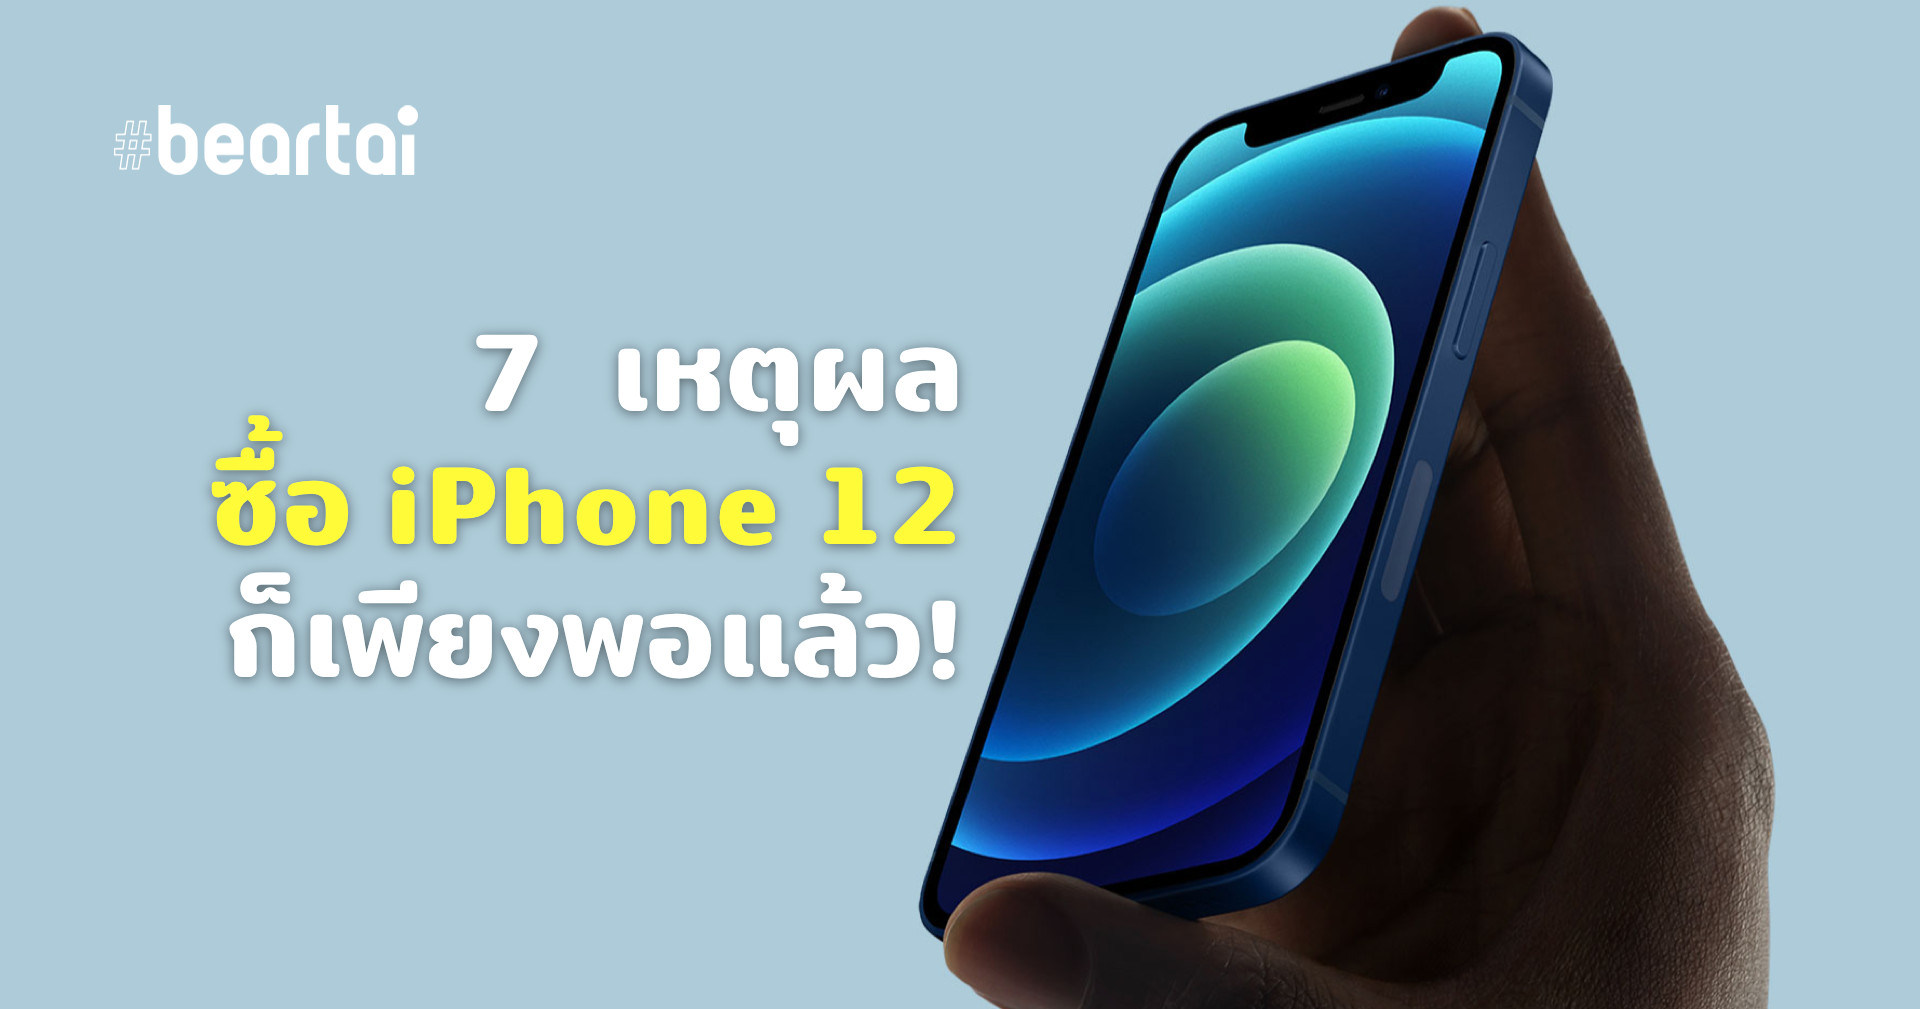 6 เหตุผล ซื้อ iPhone 12 ก็พอแล้ว ไม่จำเป็นต้องไป iPhone 12 Pro